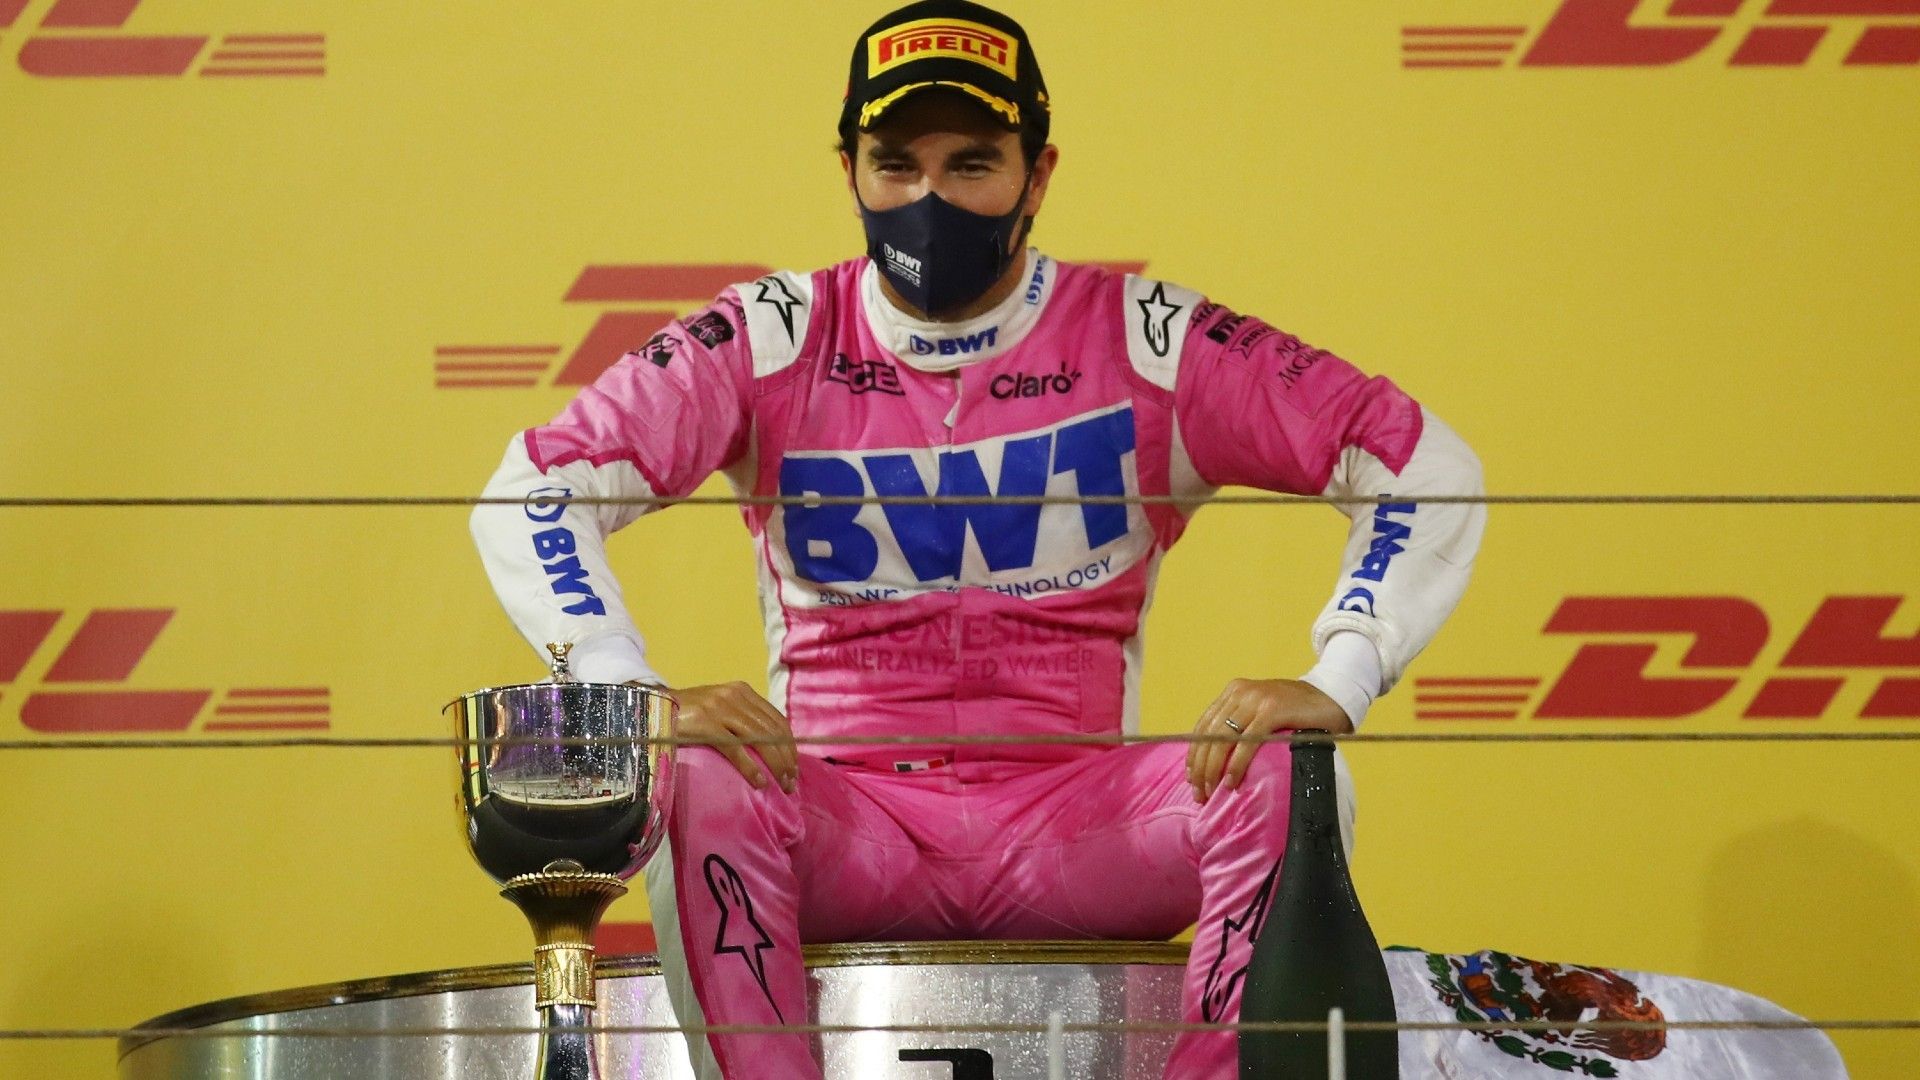 GP Sakhir F1 2020: Checo Pérez, primer mexicano en ganar en F1 en 50 años y primer latino desde Pastor Maldonado en 2012. MARCA Claro Usa